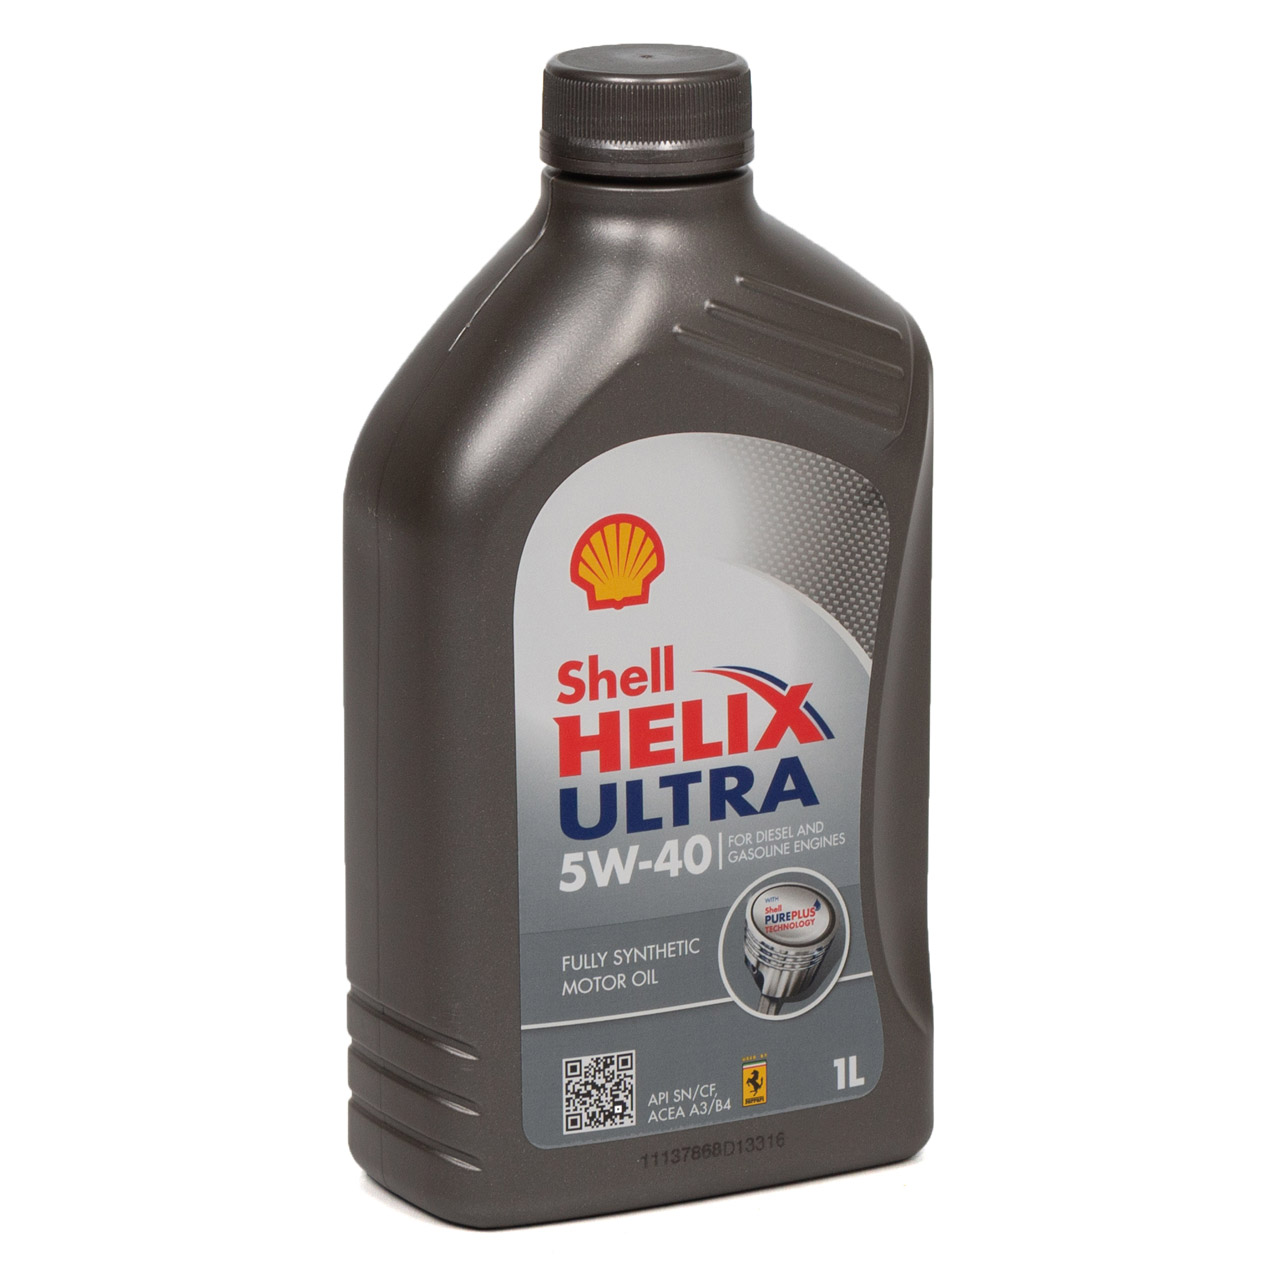 SHELL Motoröl Öl HELIX ULTRA 5W-40 5W40 MB 226/229.5 VW 502/505.00 - 1L 1 Liter